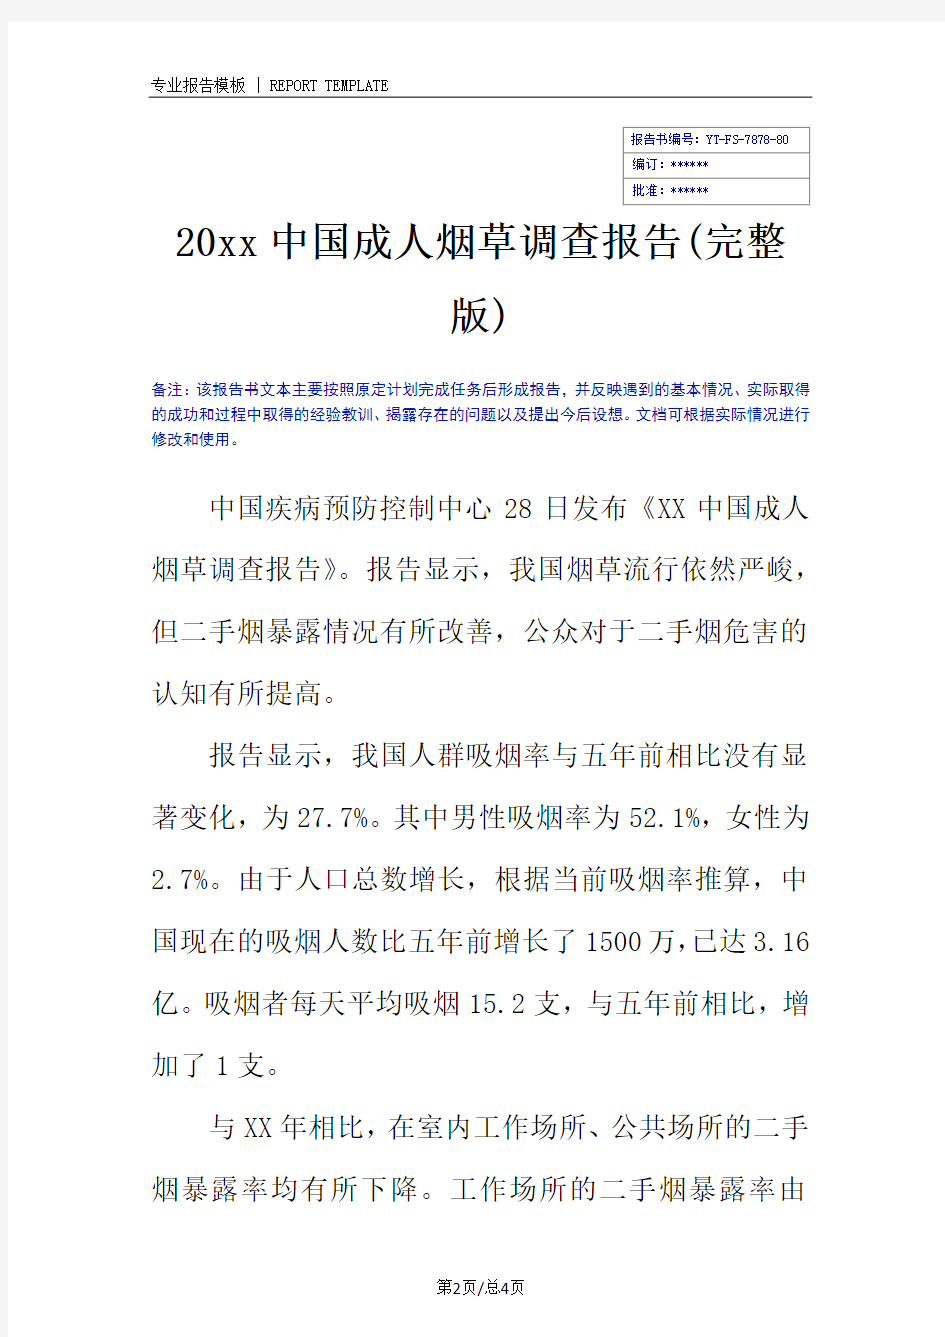 20xx中国成人烟草调查报告(完整版)